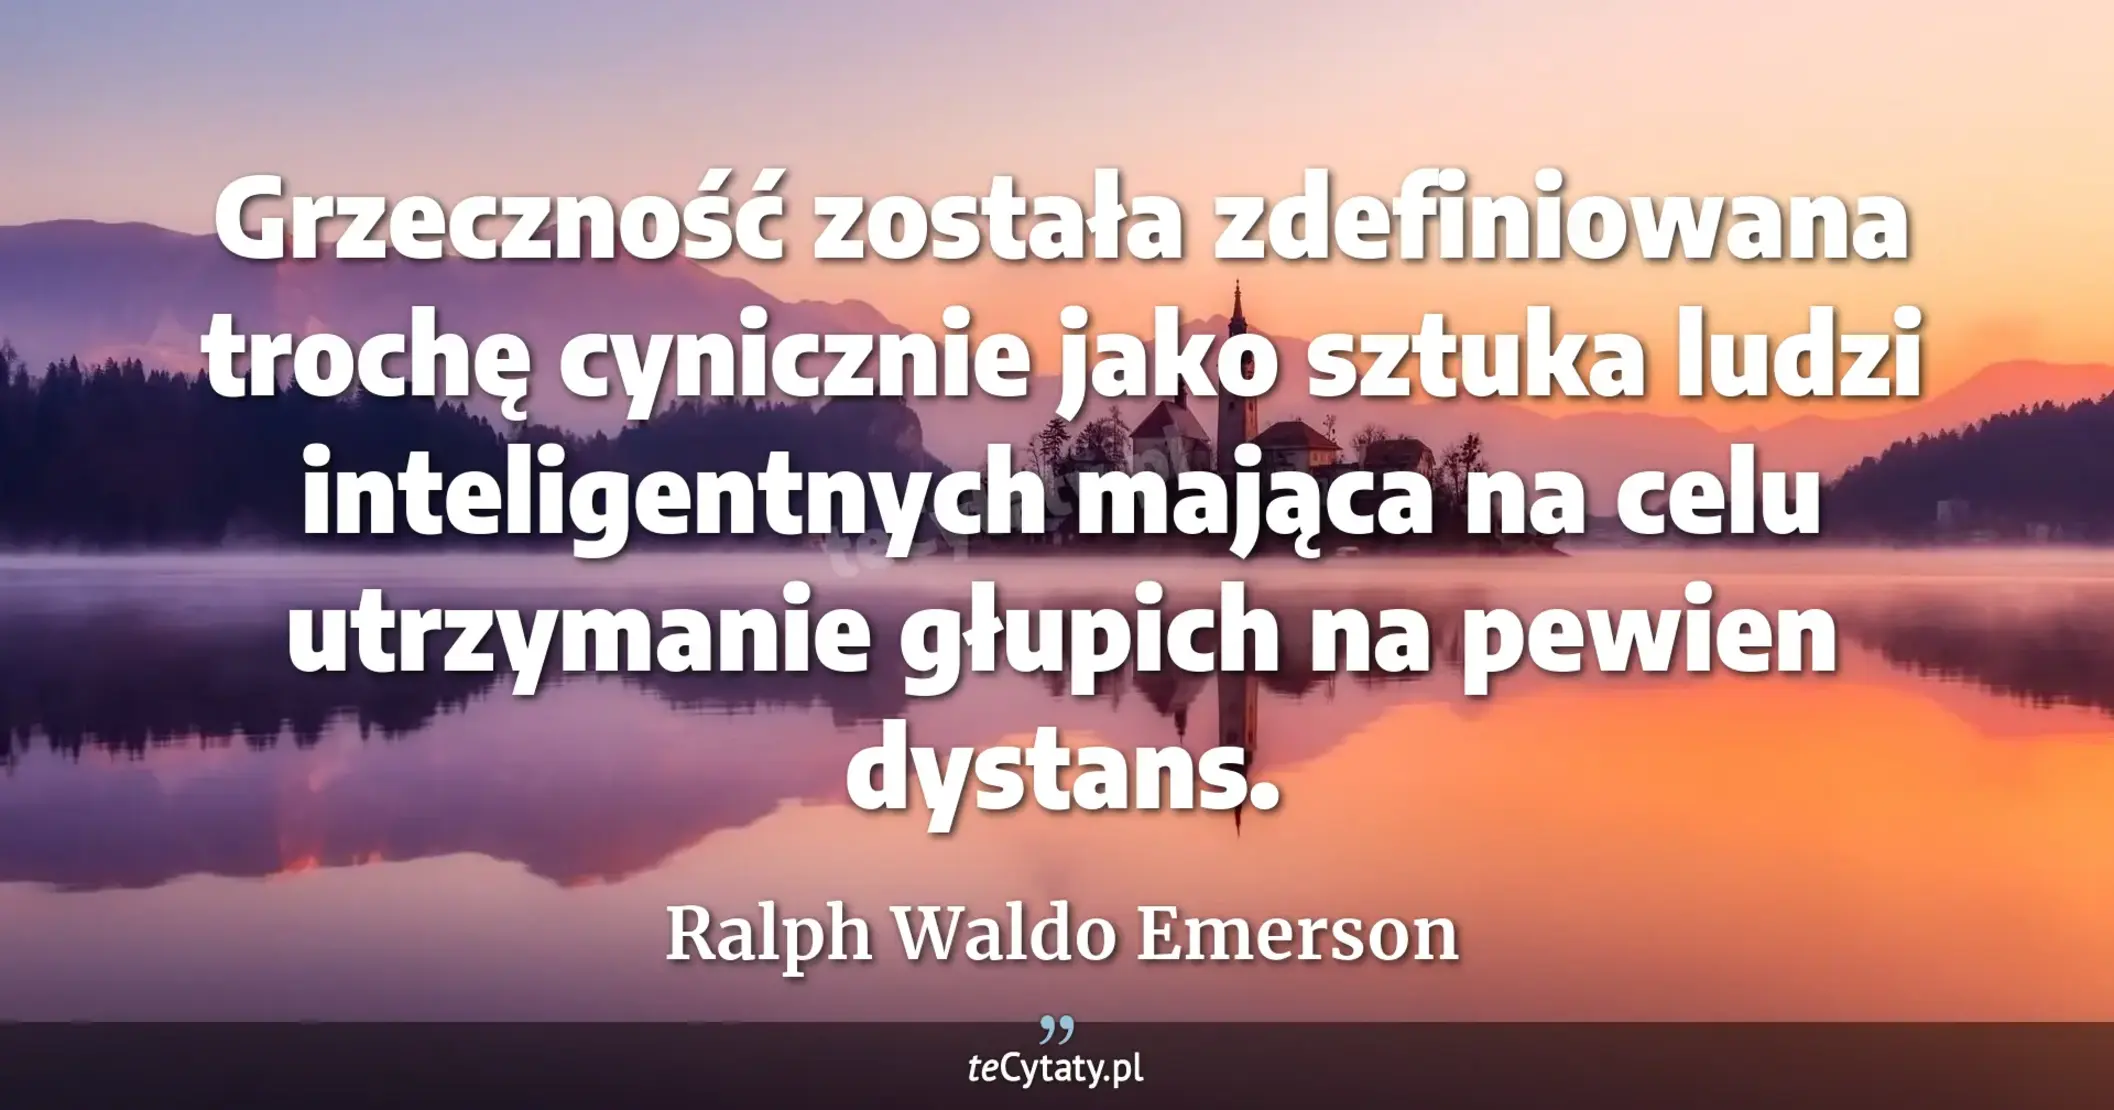 Grzeczność została zdefiniowana trochę cynicznie jako sztuka ludzi inteligentnych mająca na celu utrzymanie głupich na pewien dystans. - Ralph Waldo Emerson